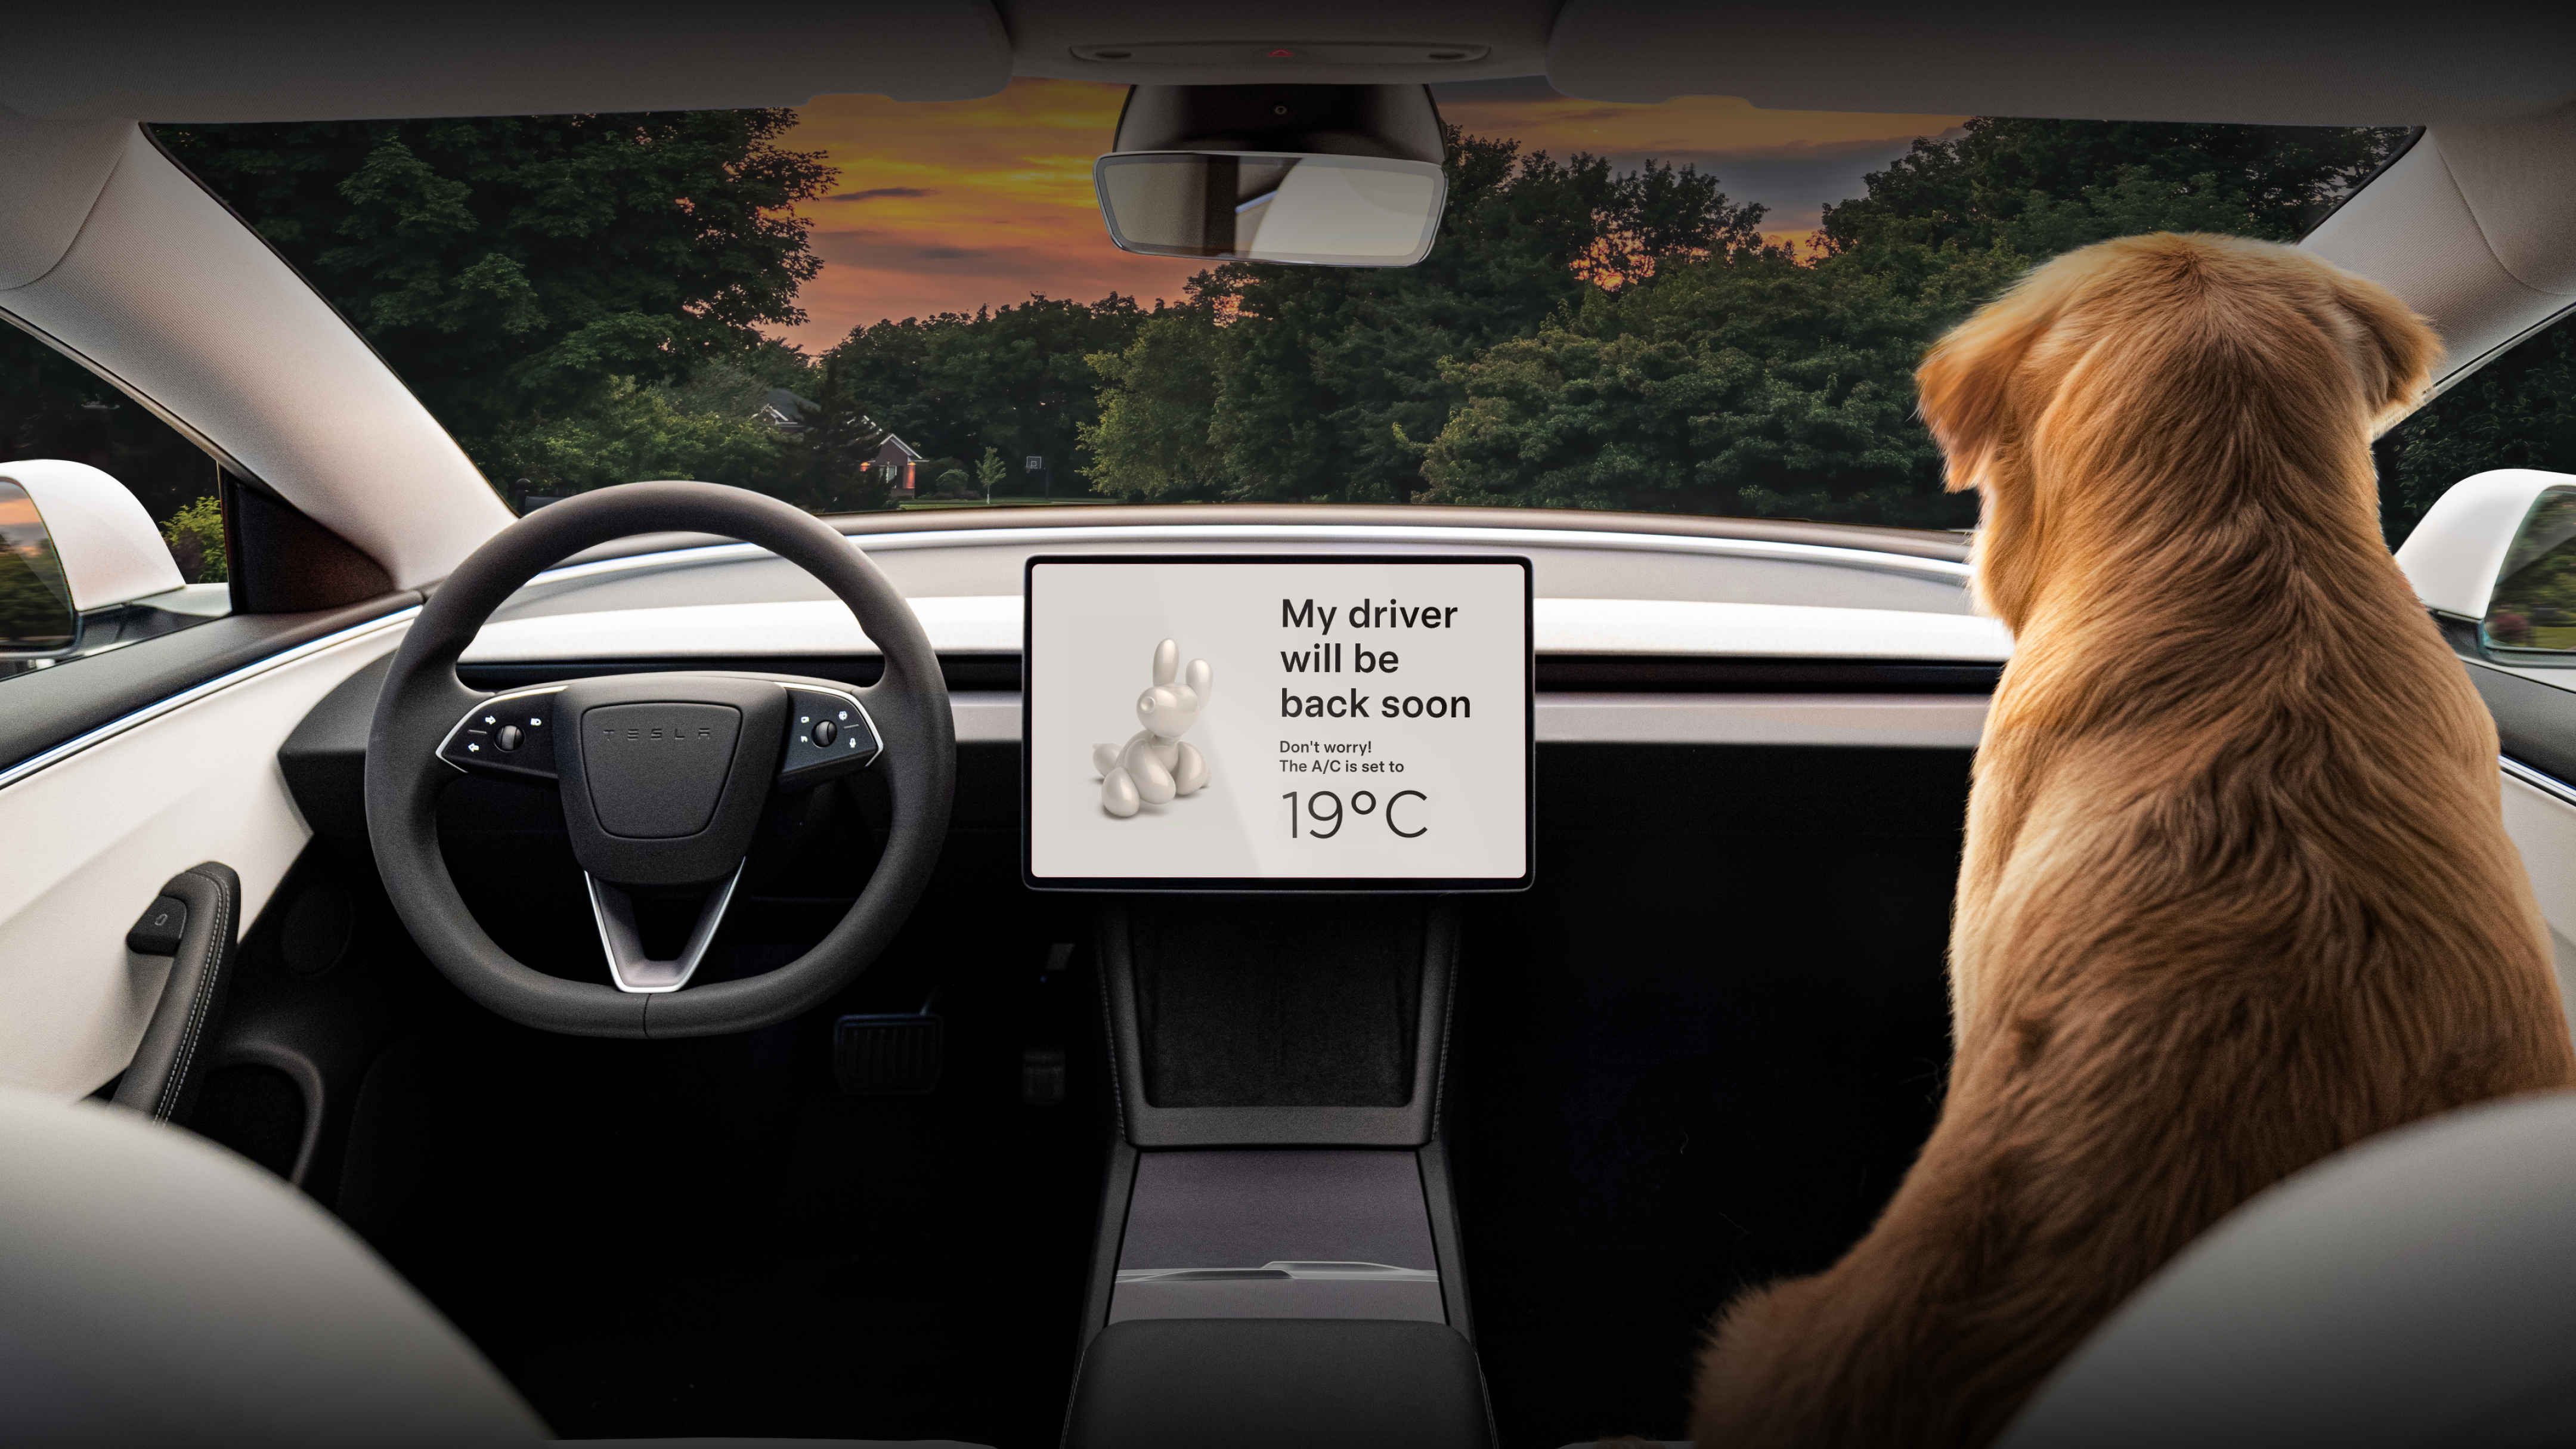 中央觸控螢幕顯示：「我的主人稍後回來」，並且副駕駛座椅上有隻黃金獵犬。